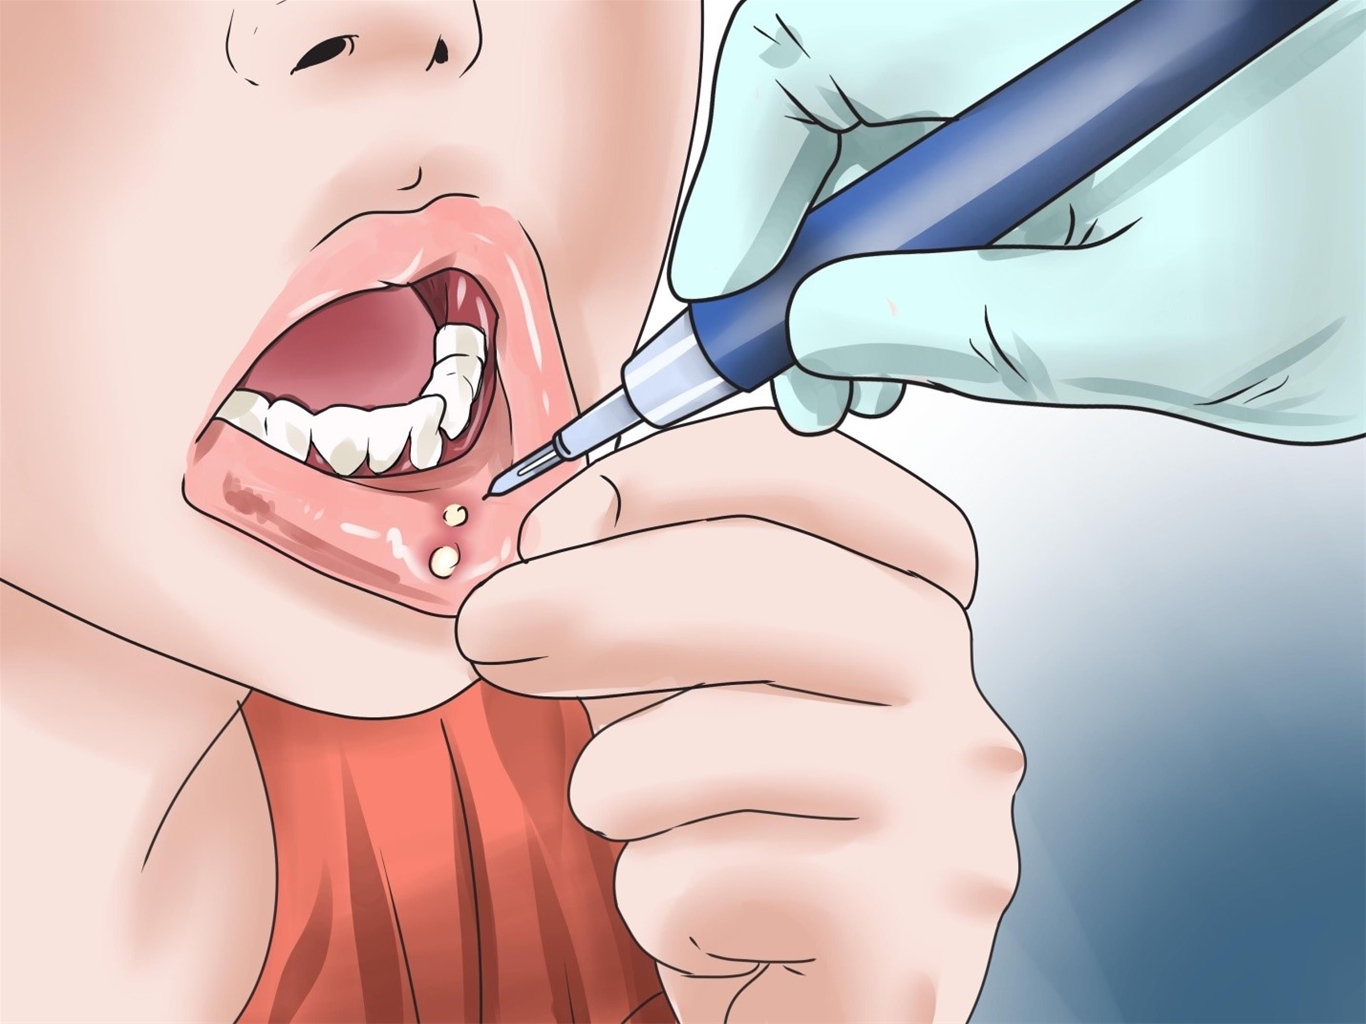 Nguyên nhân gây ra viêm loét miệng lưỡi là do nhiễm nấm, vi khuẩn hay virus